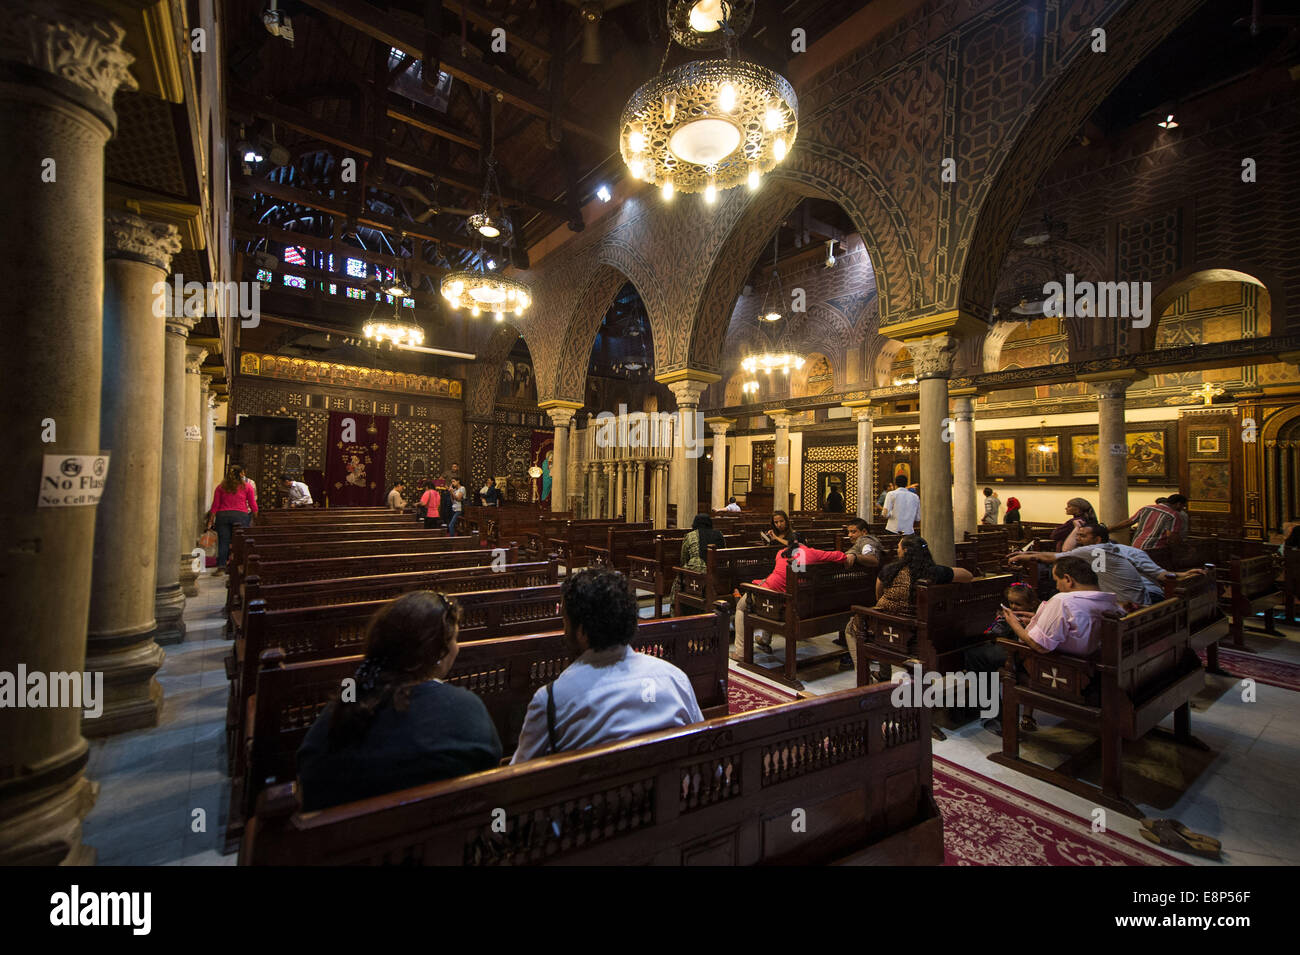 El Cairo, Egipto. 12 Oct, 2014. La gente se ve en la iglesia copta colgantes en El Cairo, Egipto, 12 de octubre de 2014. La antigua iglesia fue reabierta el 11 de octubre después de 16 años de renovación. Crédito: Pan Chaoyue/Xinhua/Alamy Live News Foto de stock